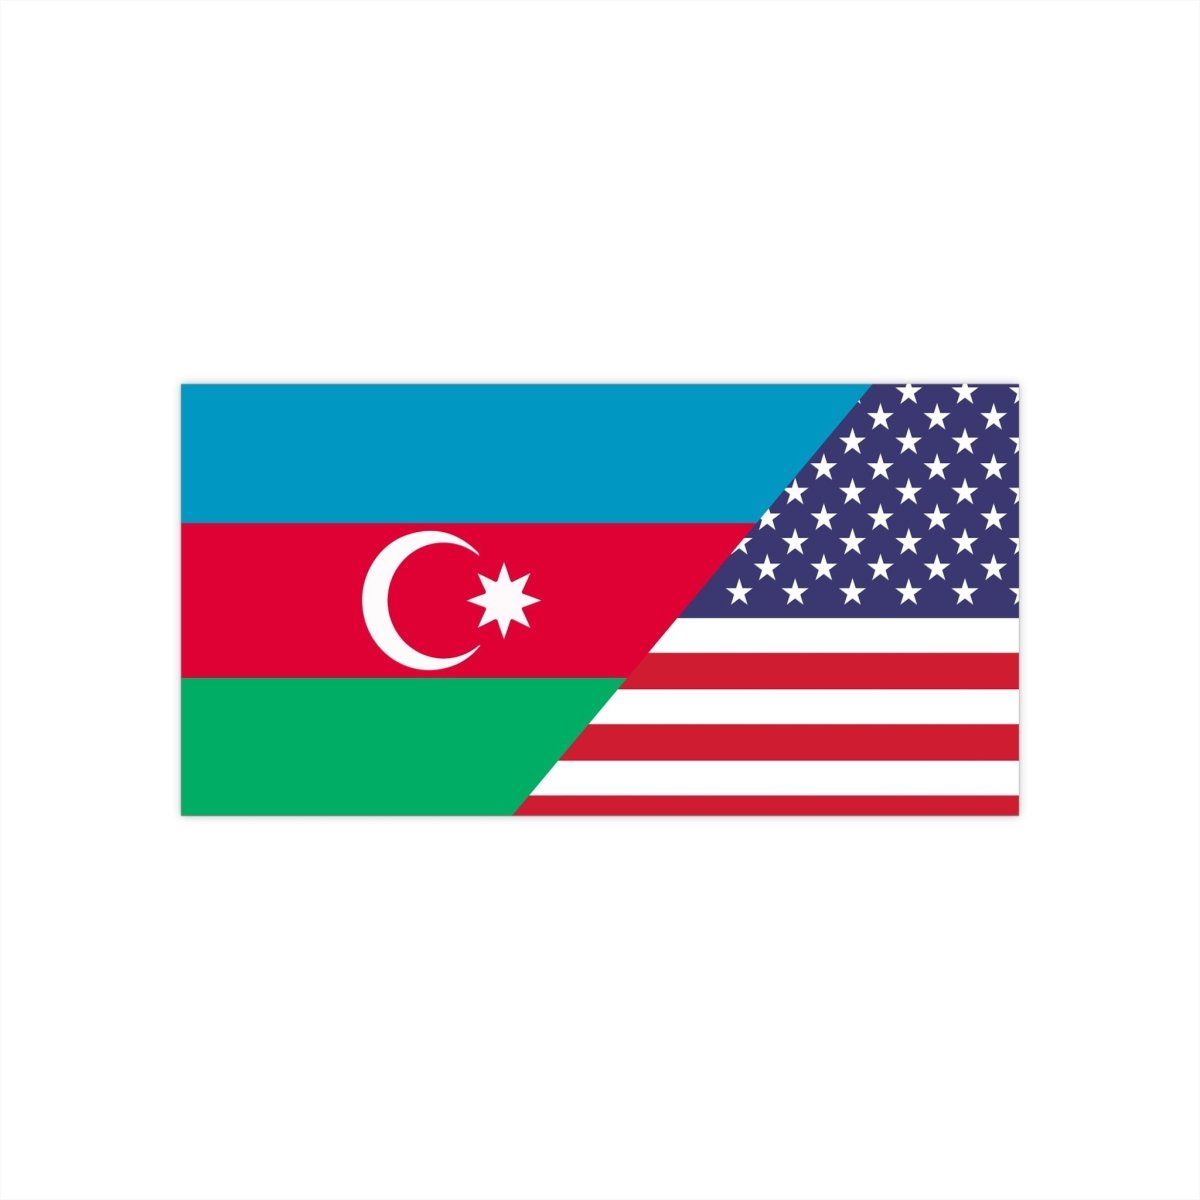 Azerbaijani American Bumper Stickers - Cultics